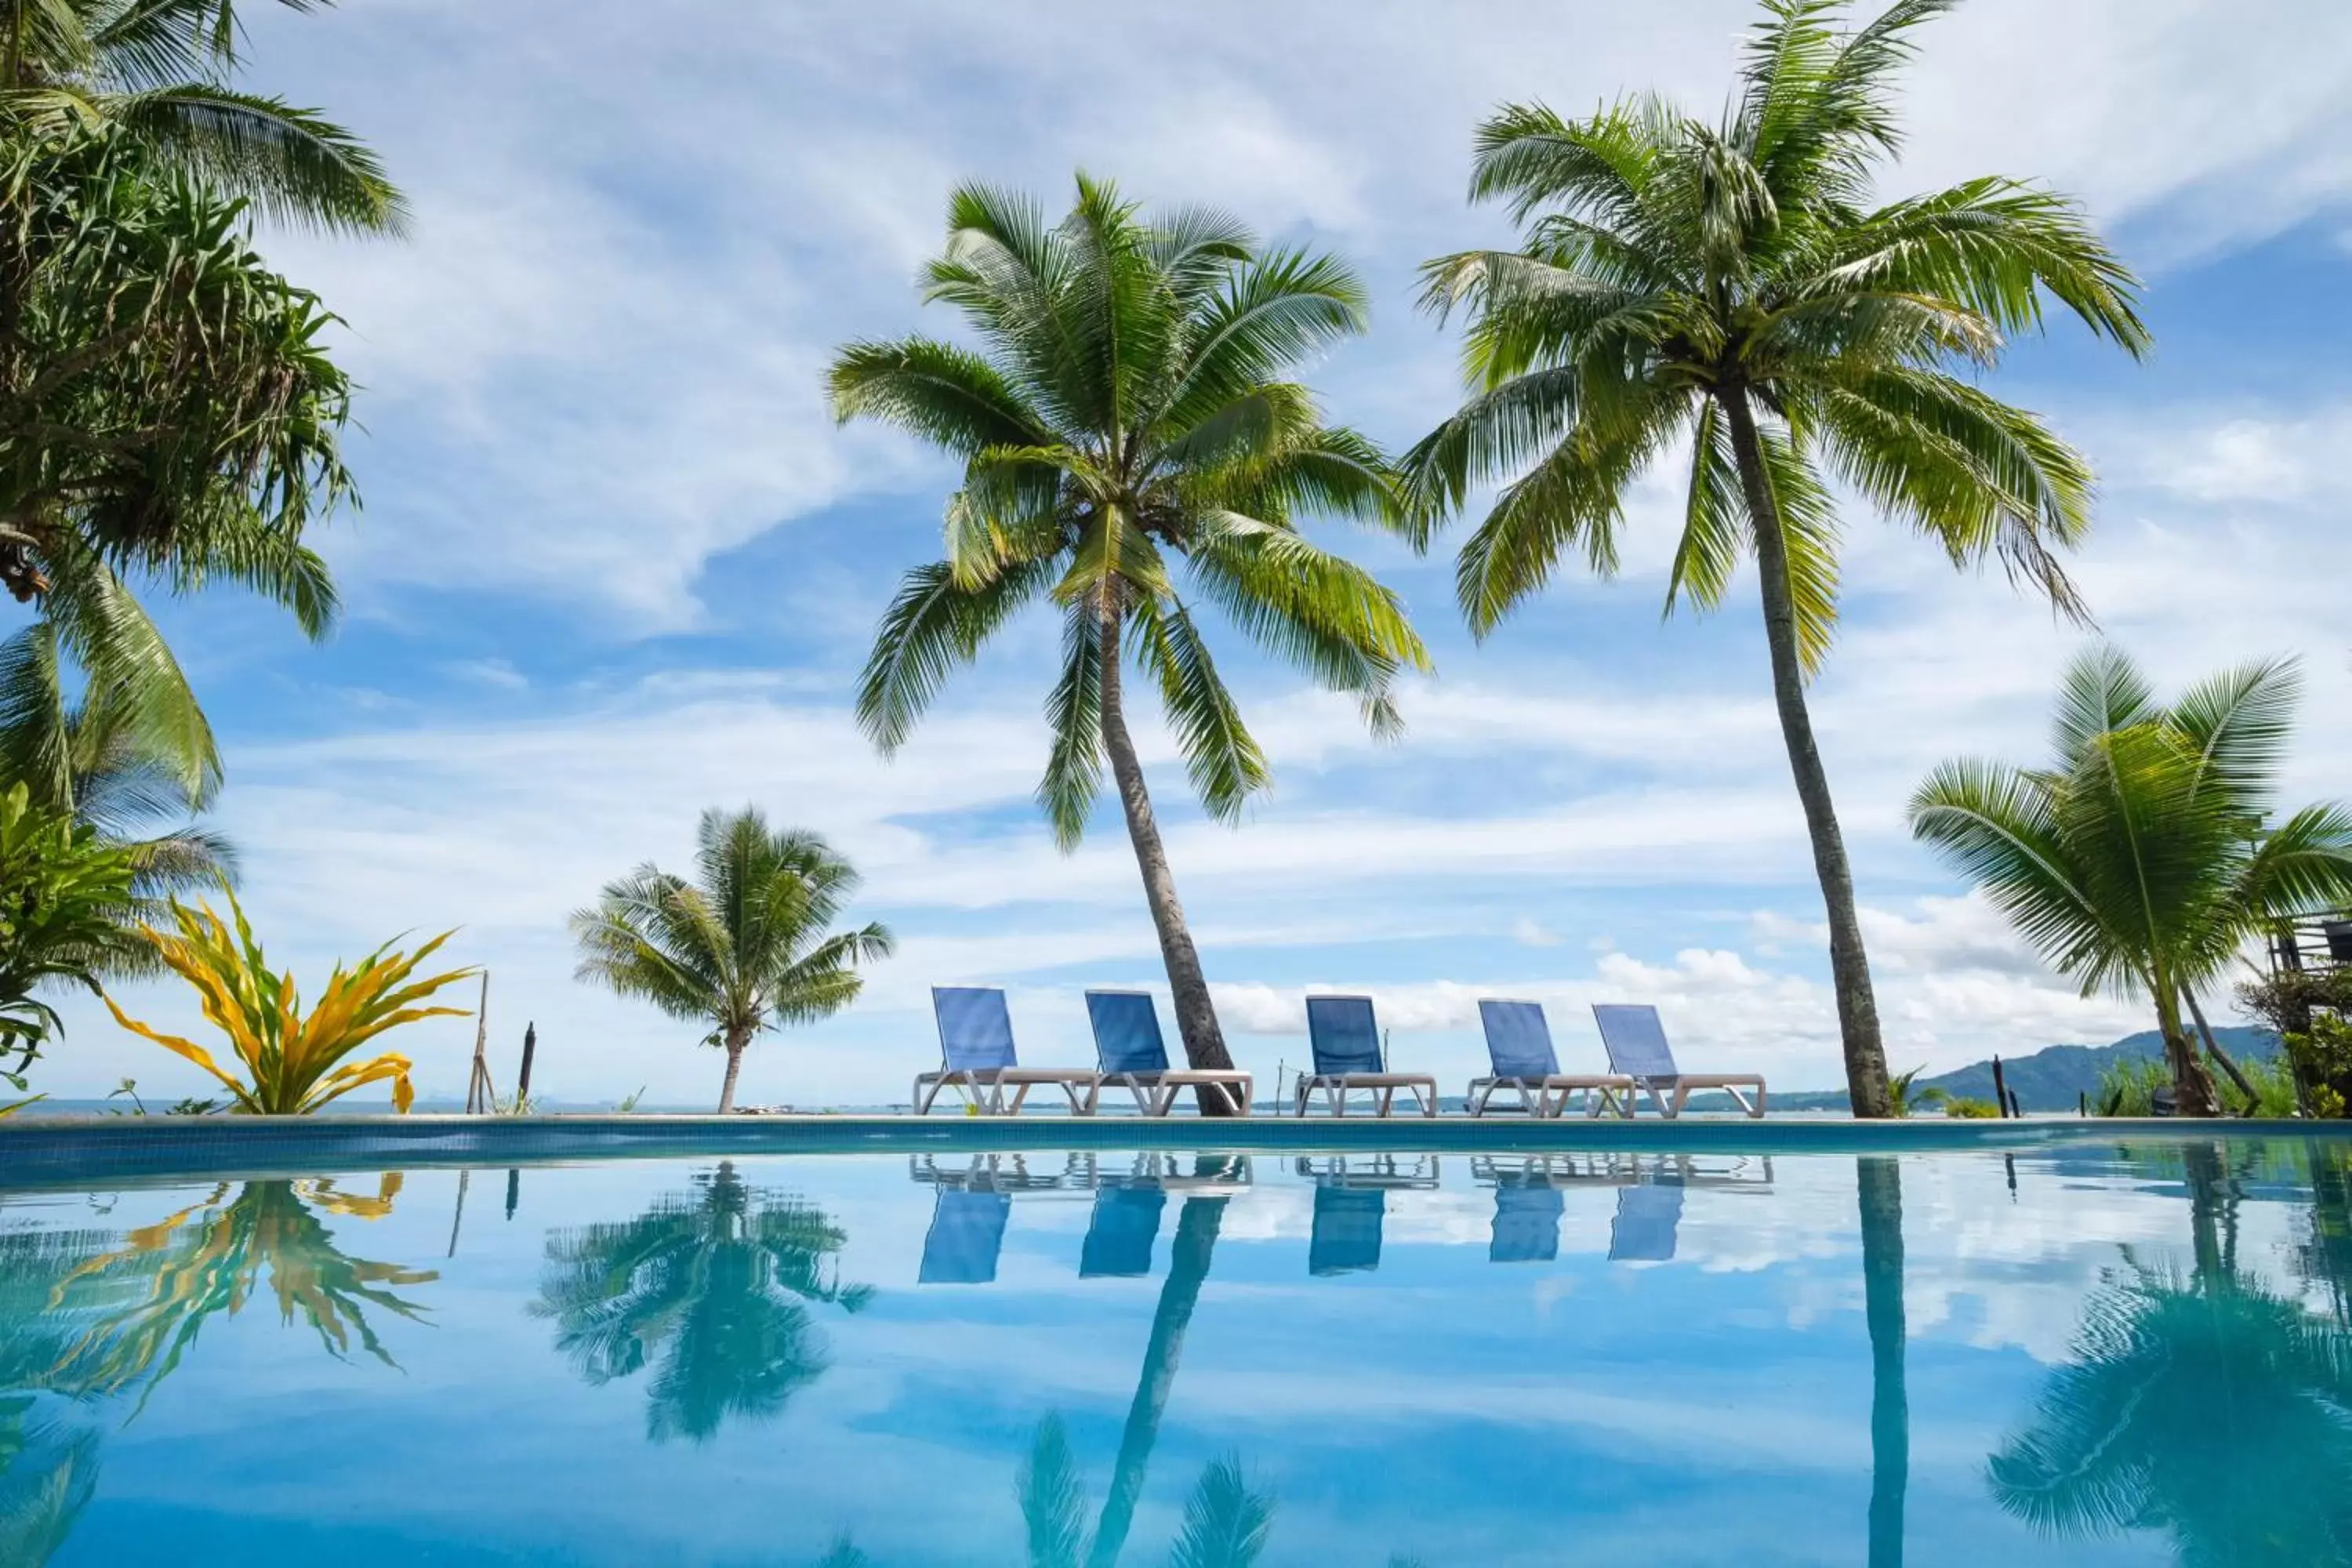 Swimming Pool in Club Fiji Resort